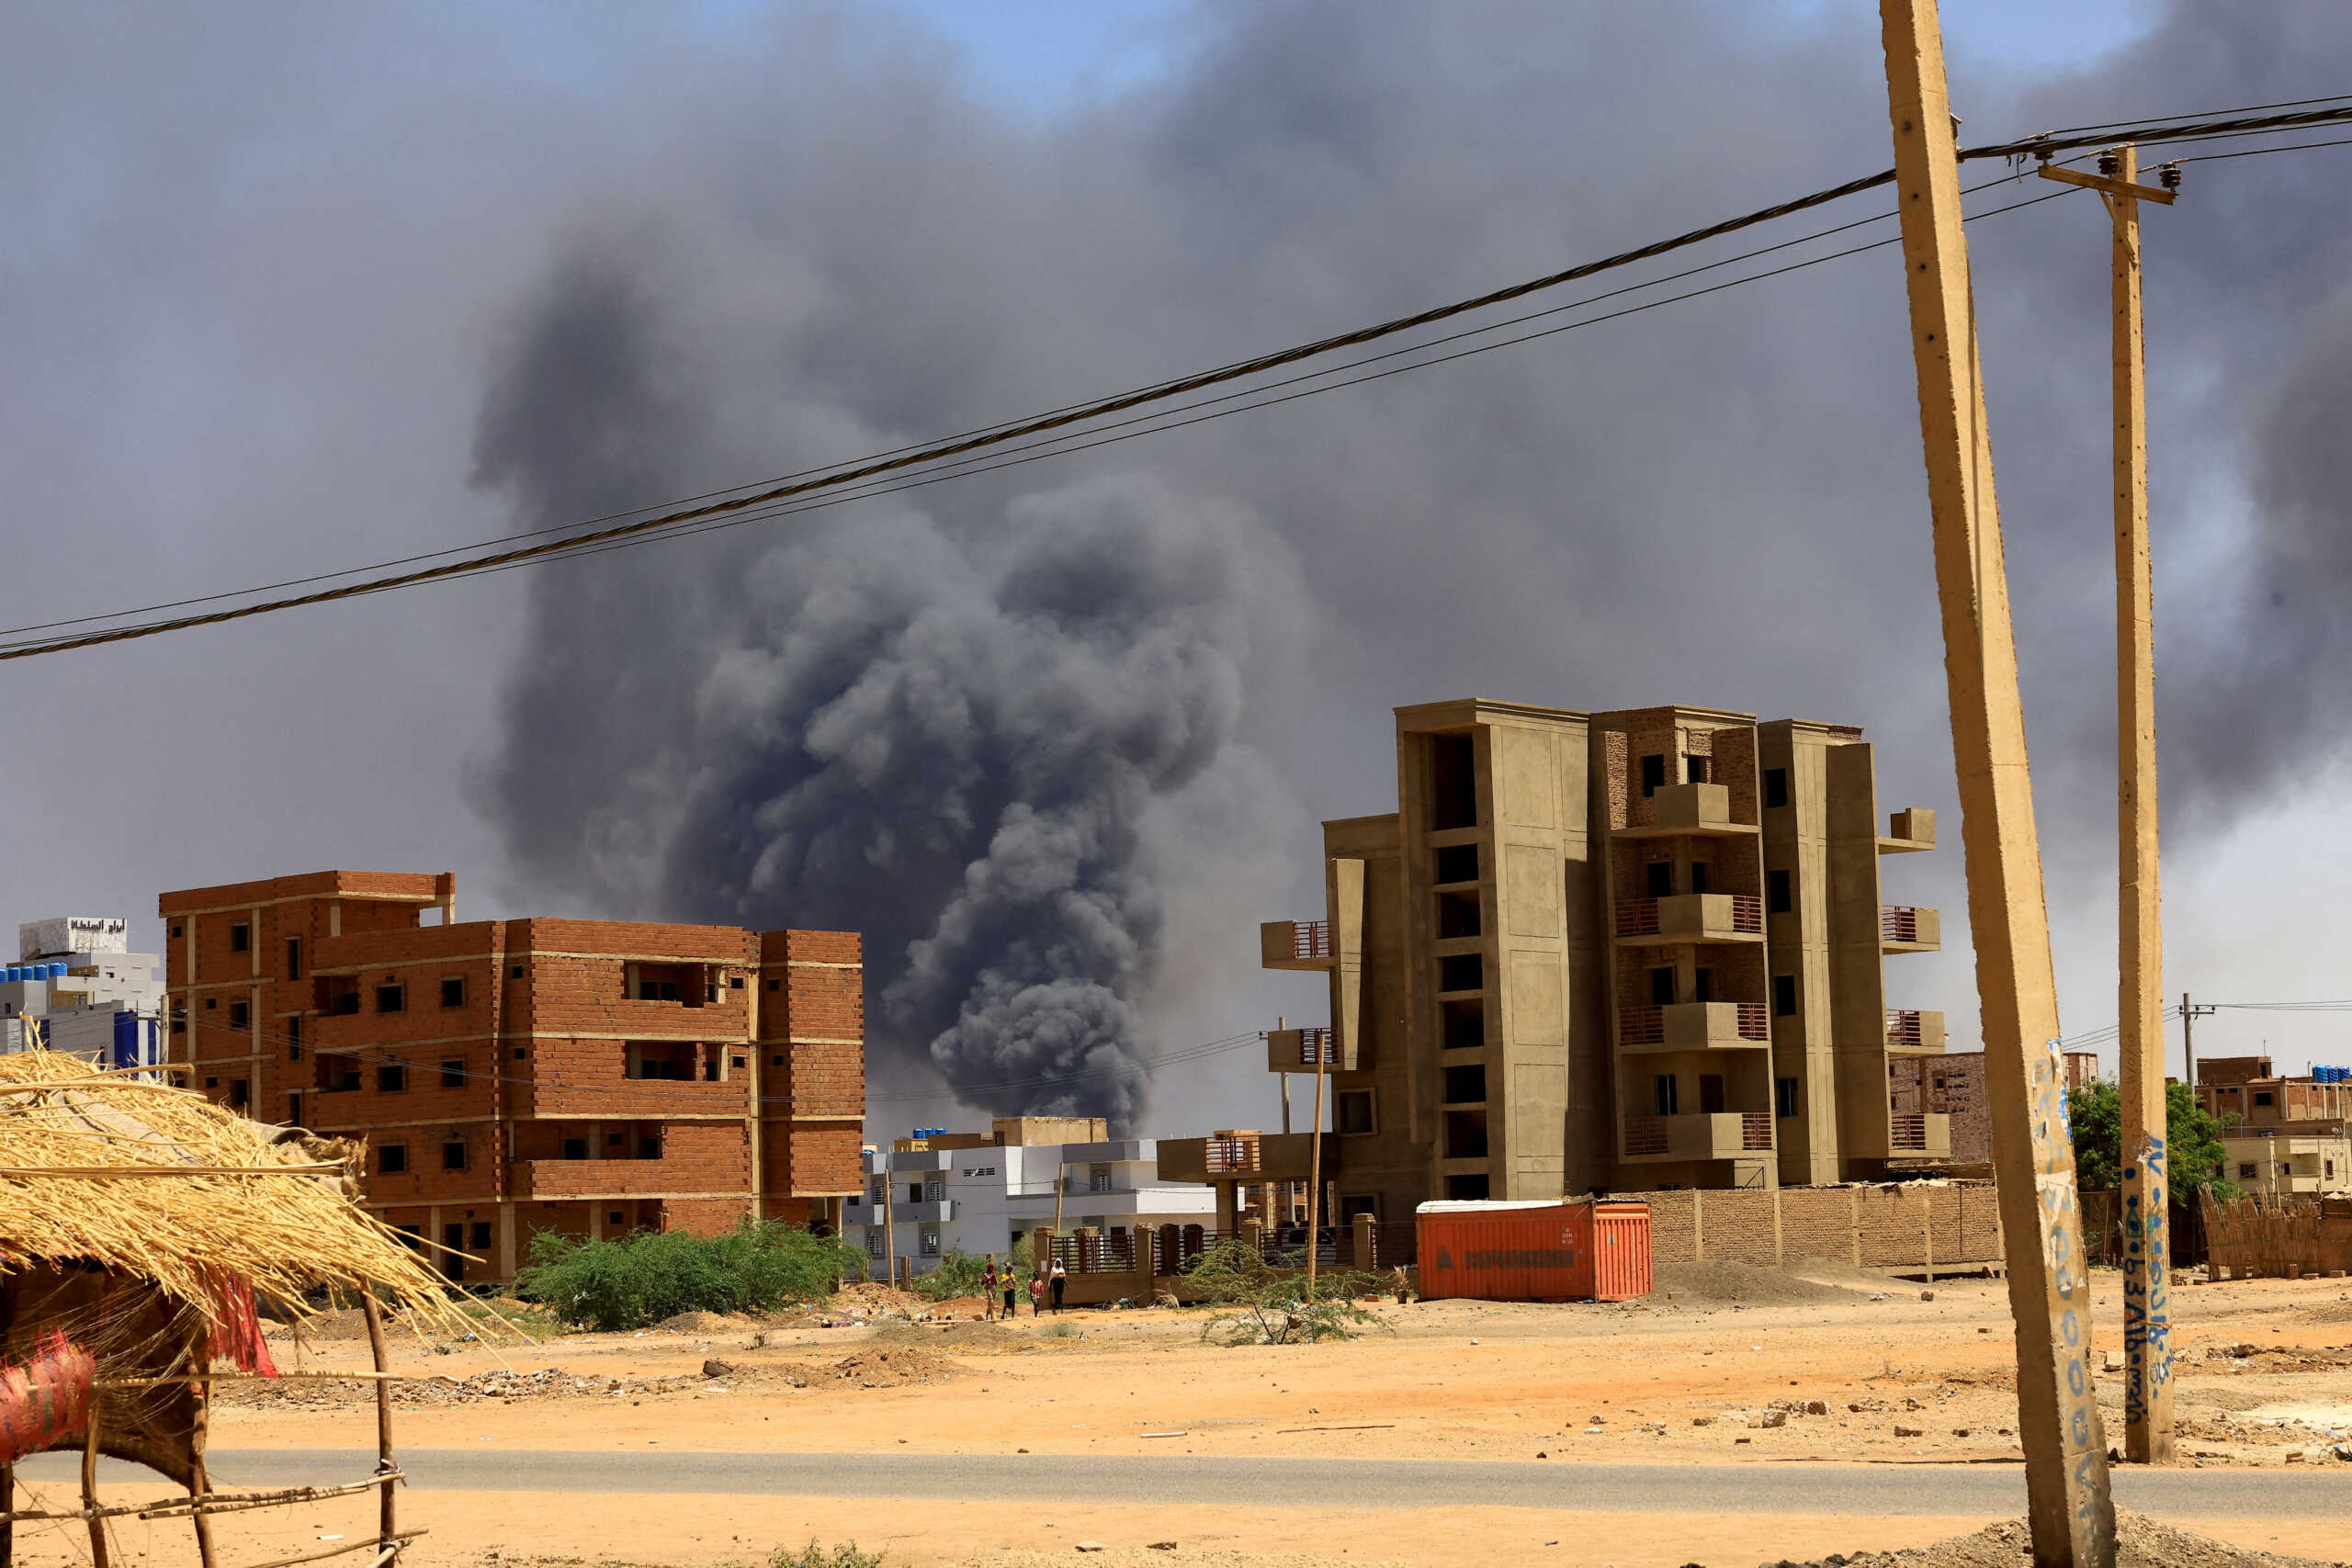 Σουδάν: Οβίδες χτύπησαν αγορά στο Χαρτούμ – Τουλάχιστον 20 άμαχοι νεκροί